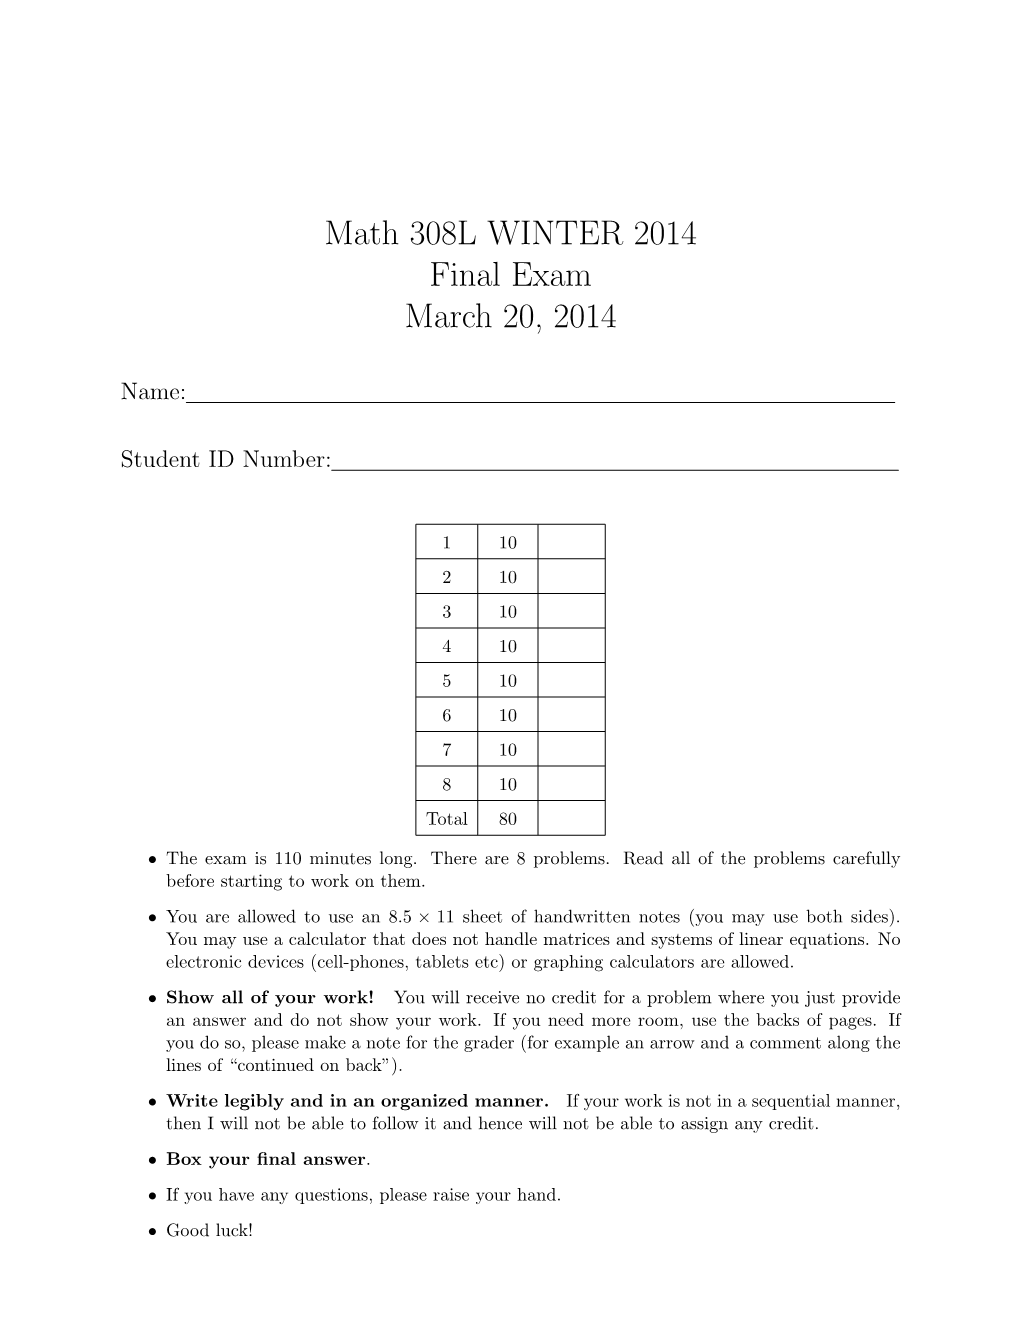 Math 308L WINTER 2014 Final Exam March 20, 2014